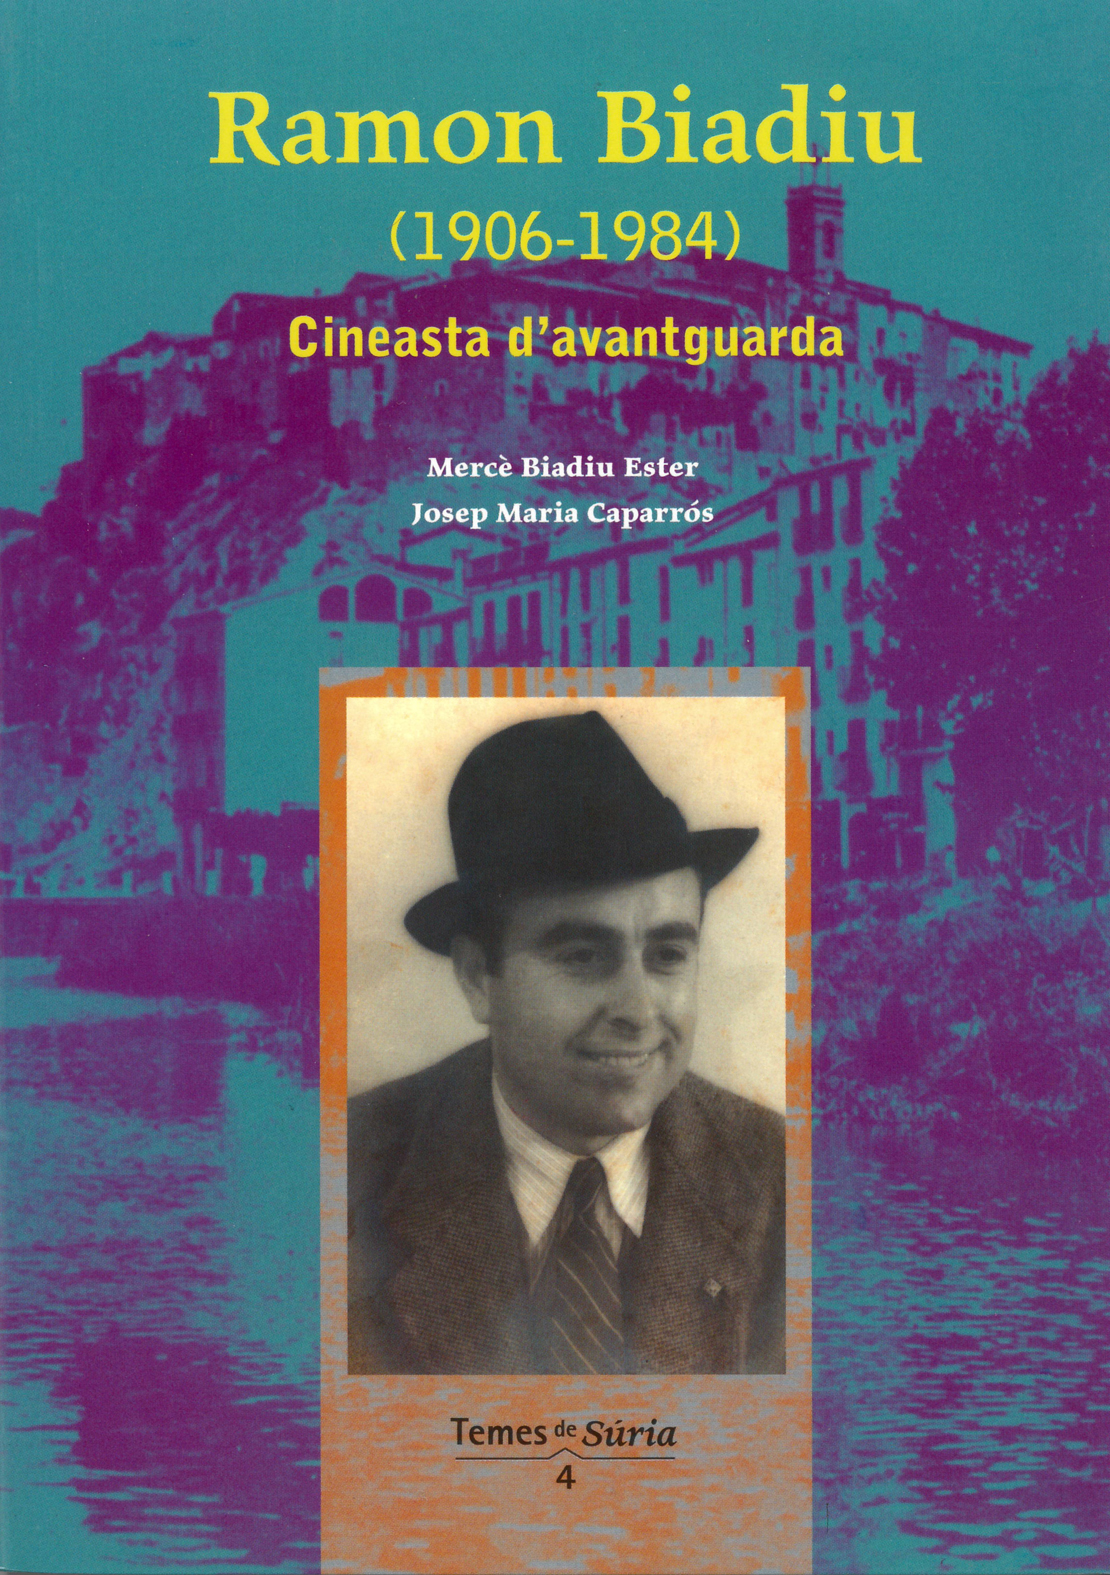 Any 2007 - Portada del llibre 'Ramon Biadiu (1906-1984). Cineasta d'avantguarda' de MercÃ¨ Biadiu Ester i Josep Maria CaparrÃ³s.